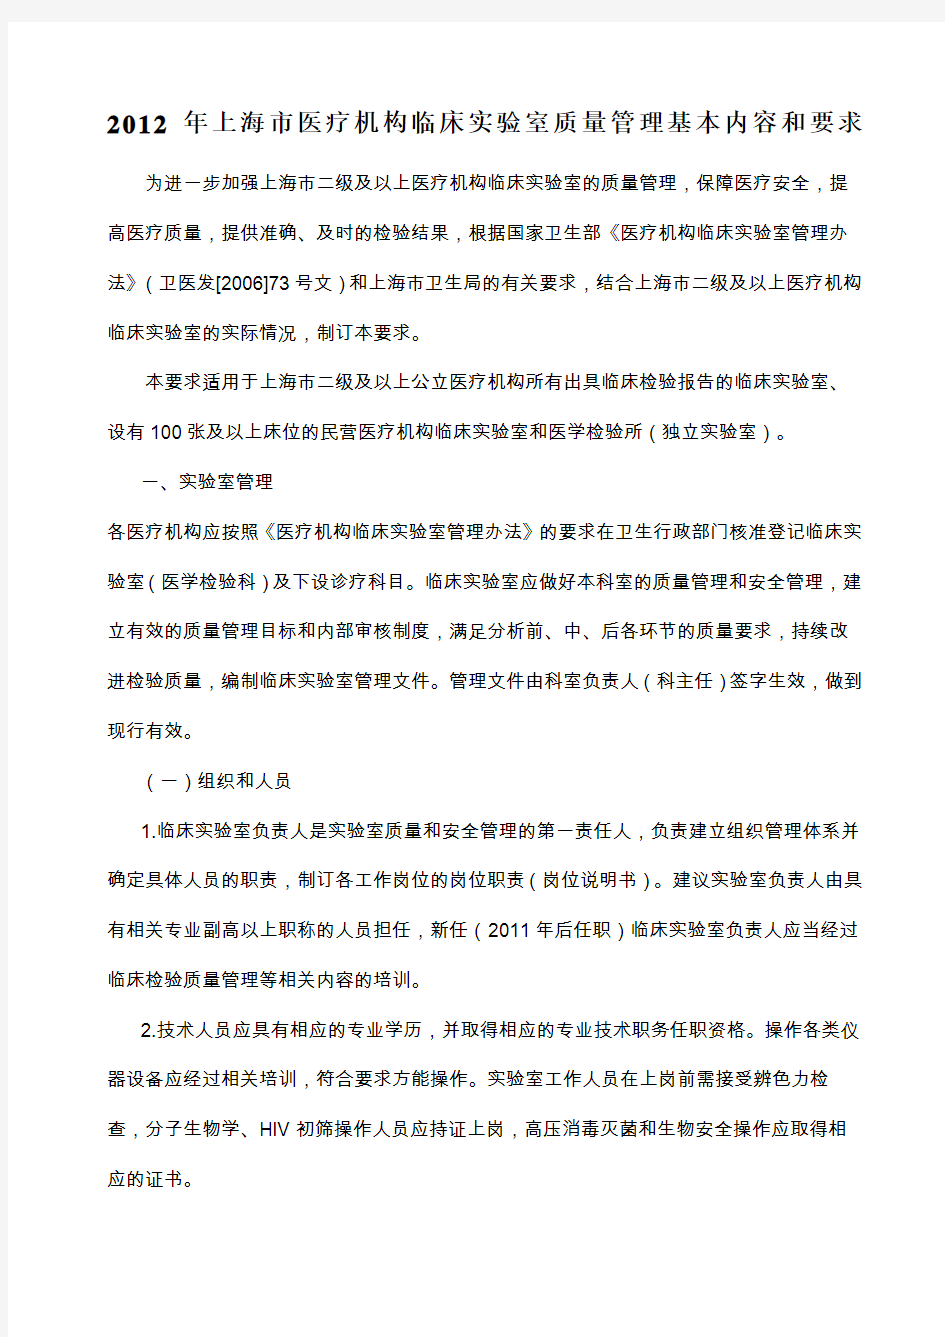 上海市医疗机构临床实验室质量管理基本内容和要求